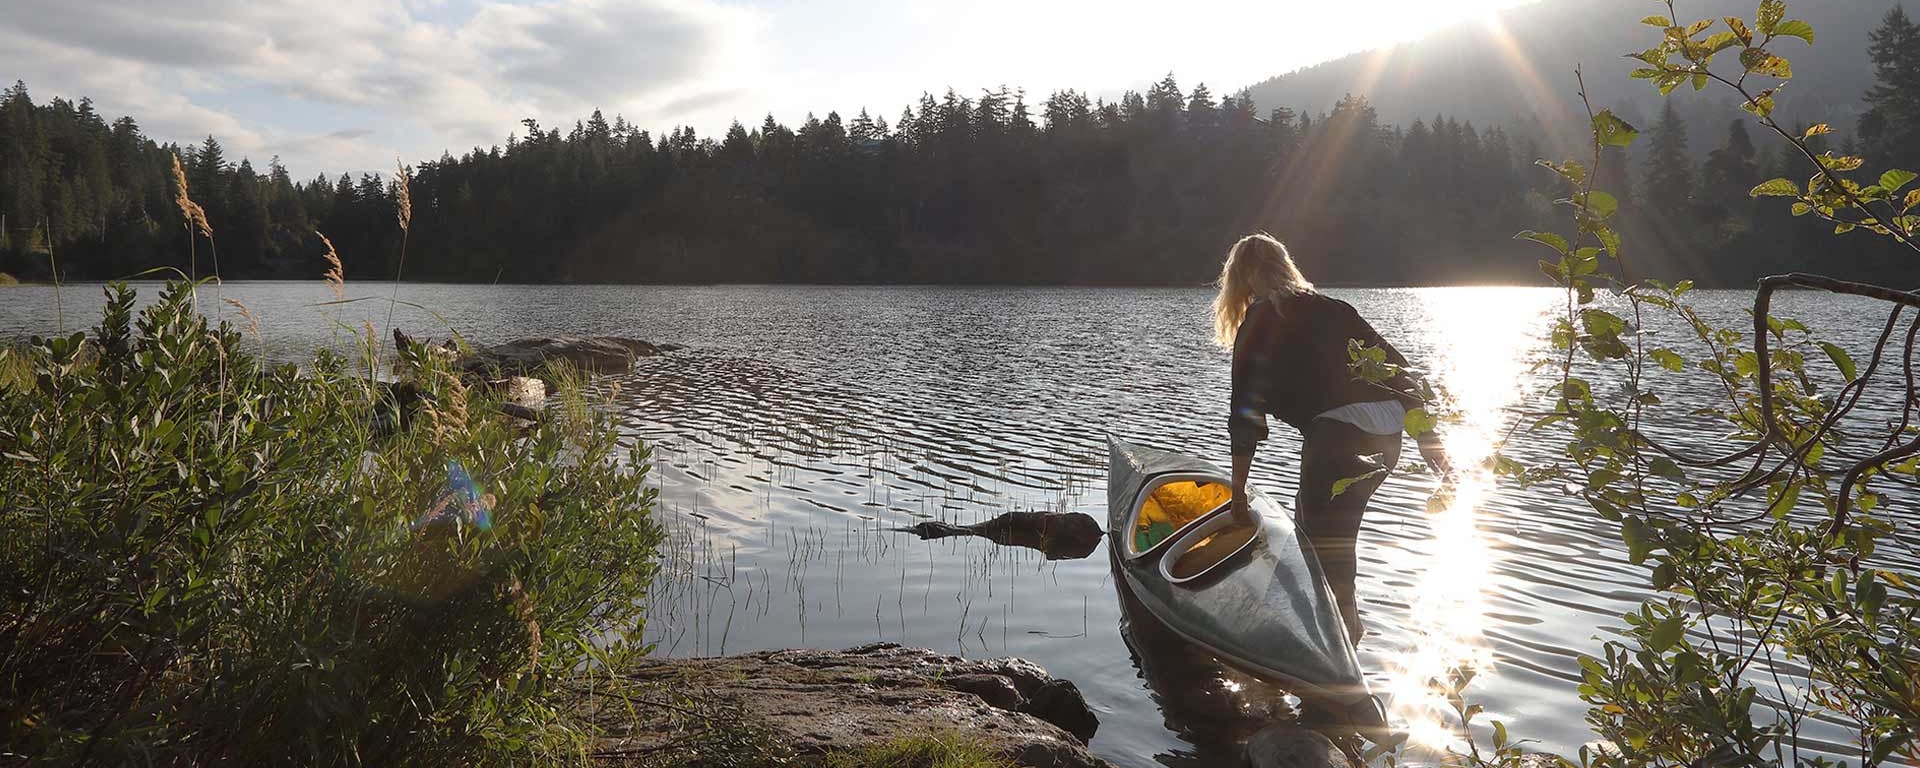 Una donna sale su una canoa in un lago